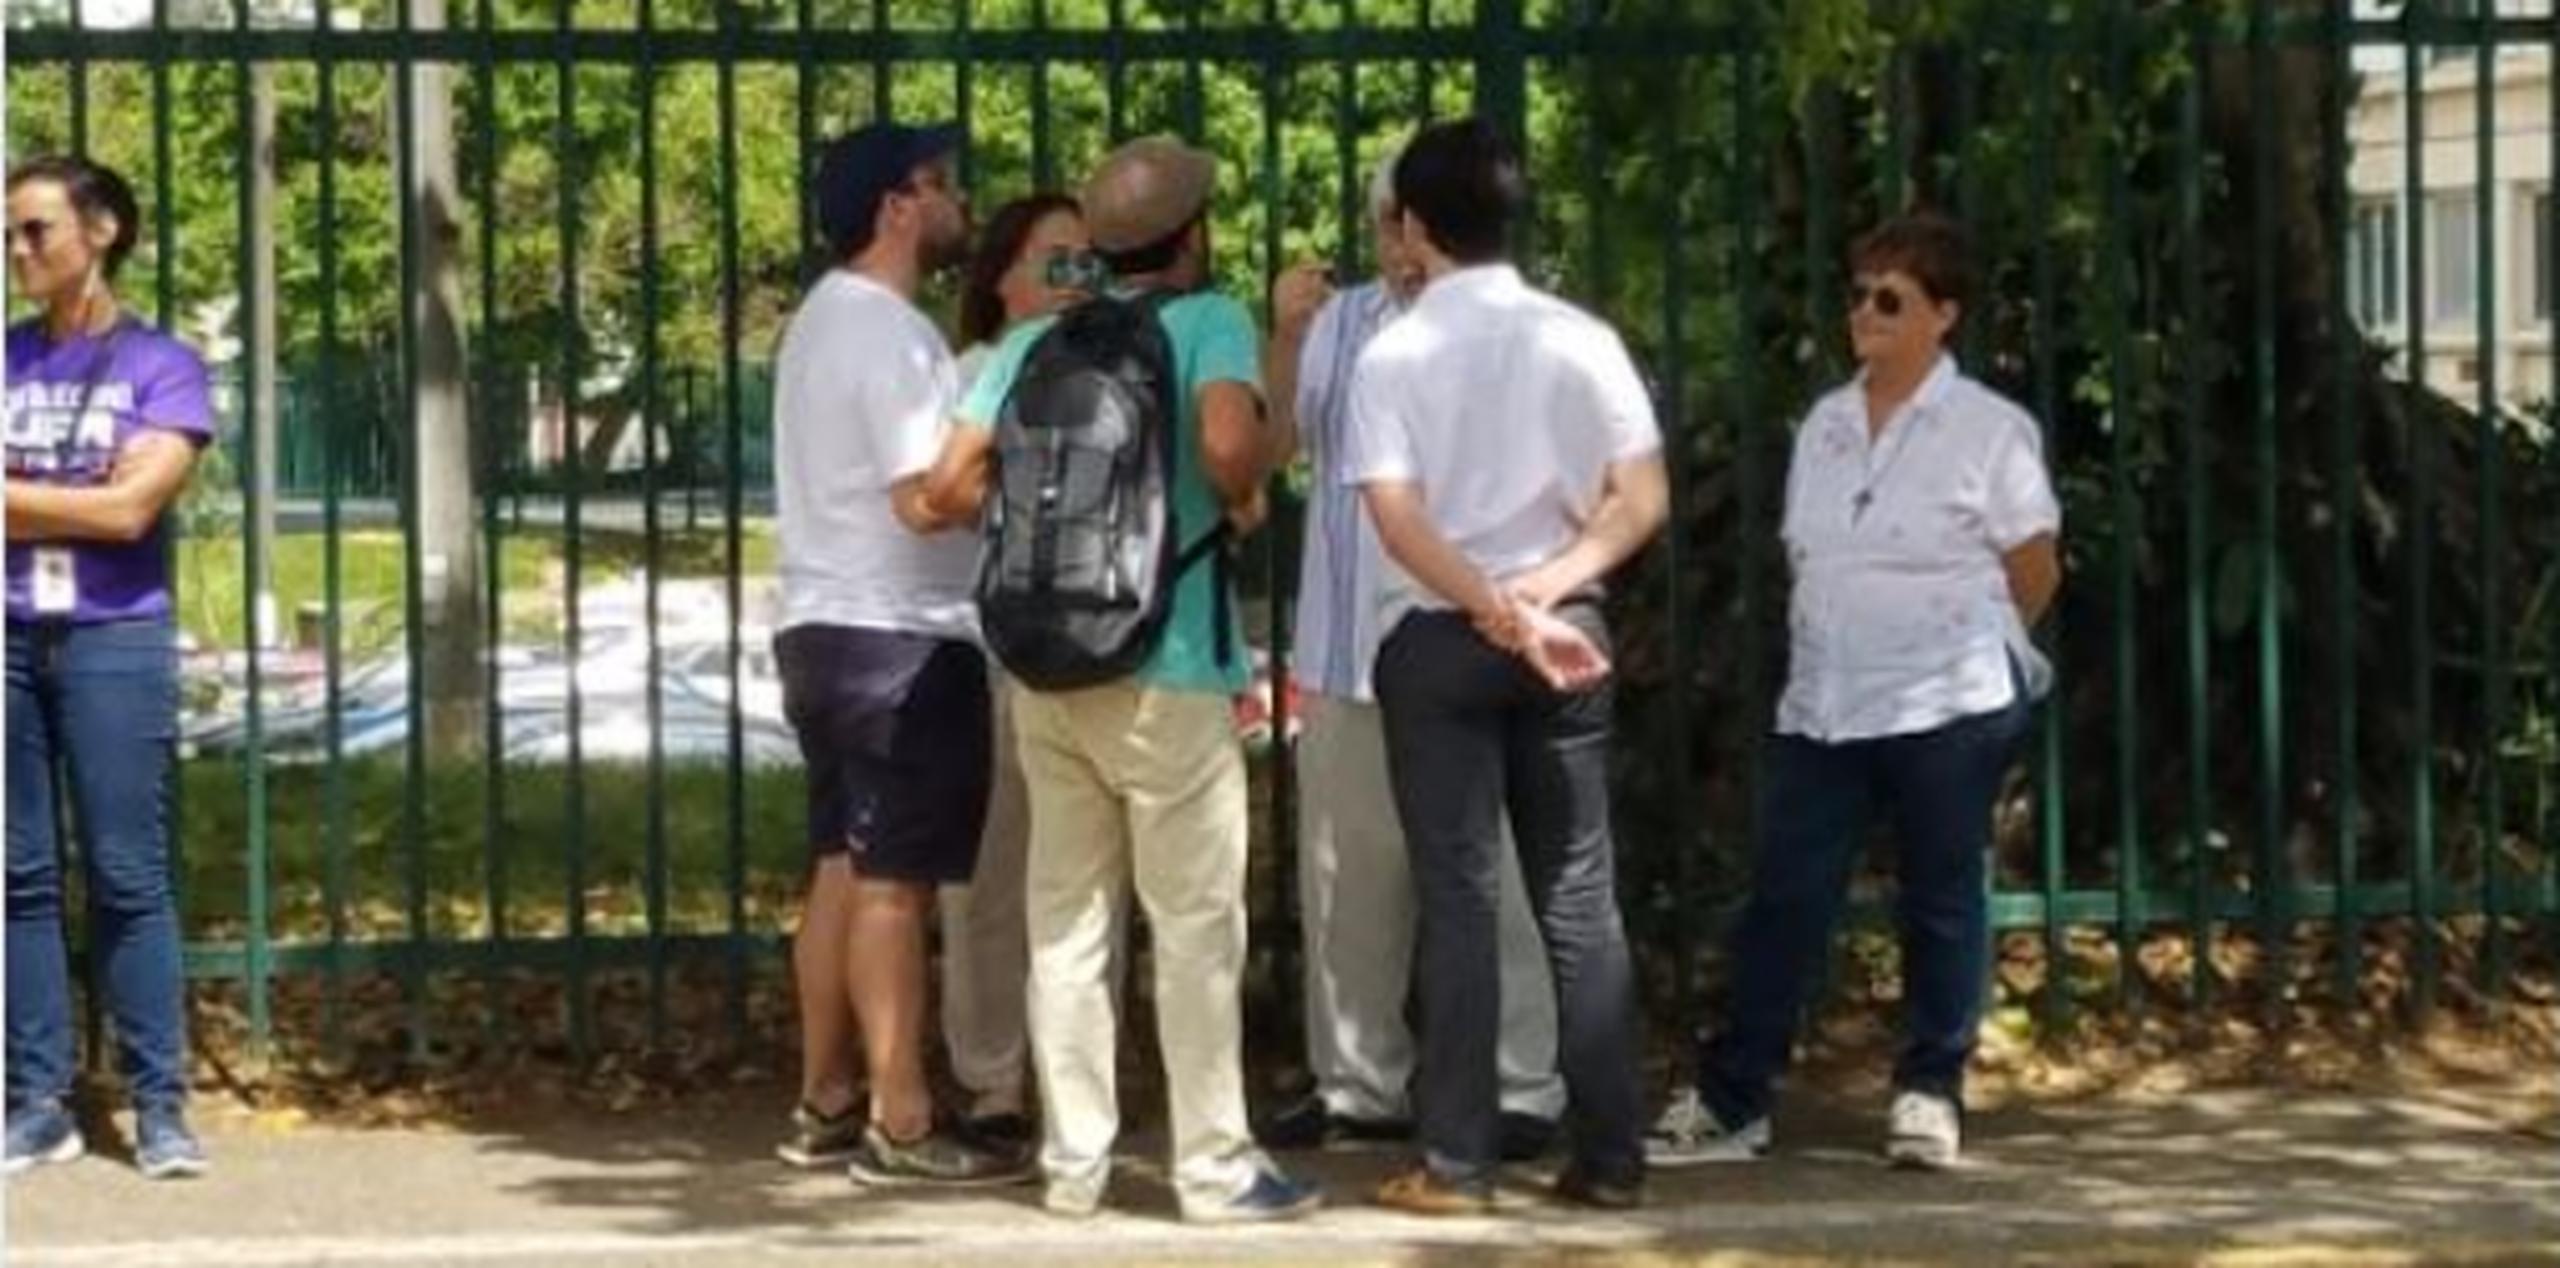 Profesores y estudiantes vestidos de blanco conversan ferente a los portones con uno de los estudiantes miembros del Comité Negociador. (Twitter/@MColonCruz)